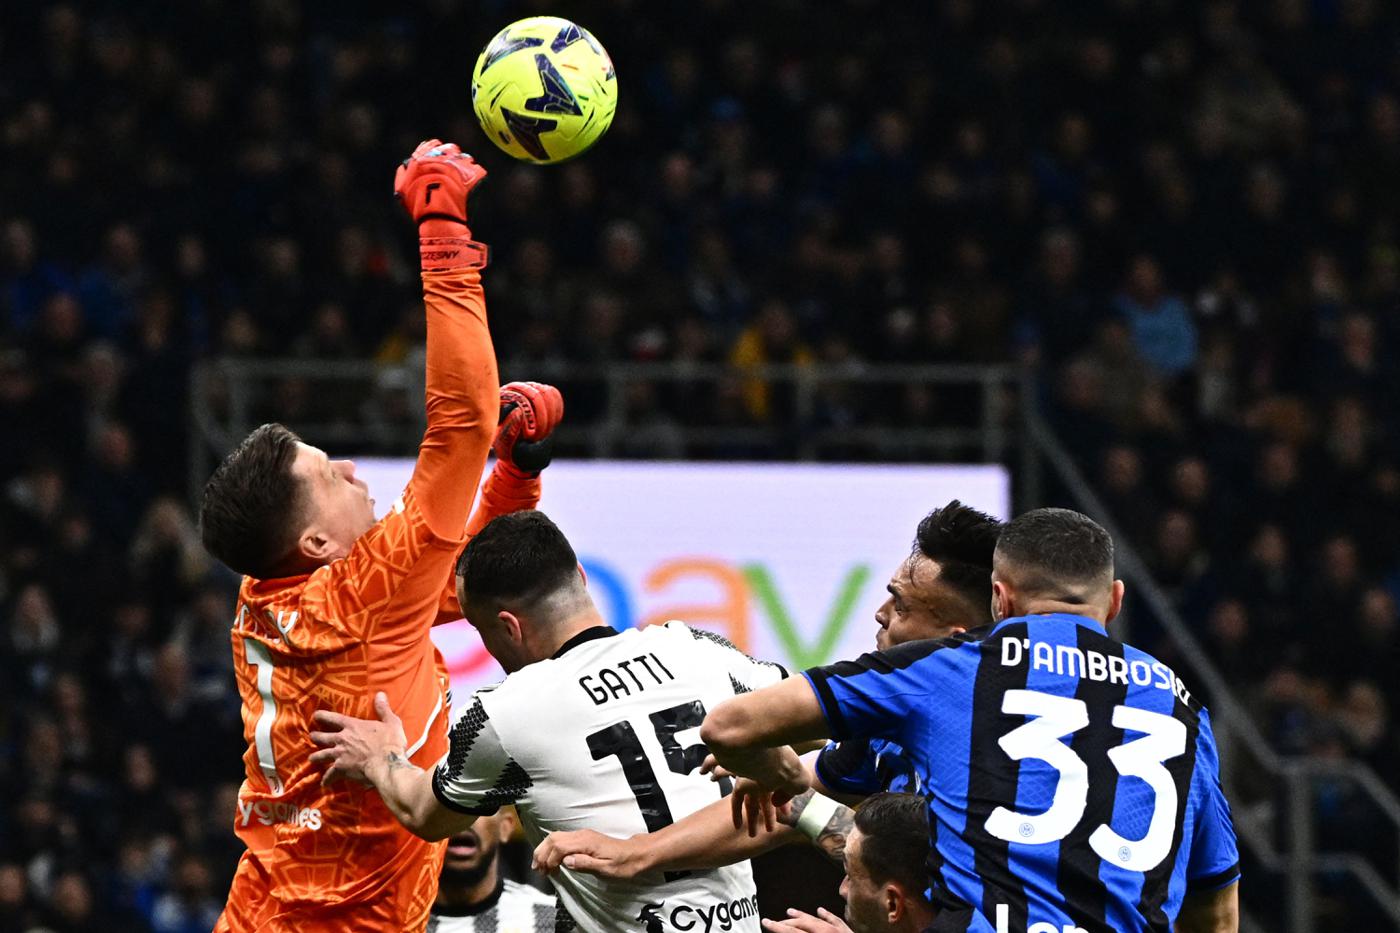 Inter - Juventus - 0-1. Italienische Meisterschaft, 27. Runde. Spielbericht, Statistik.